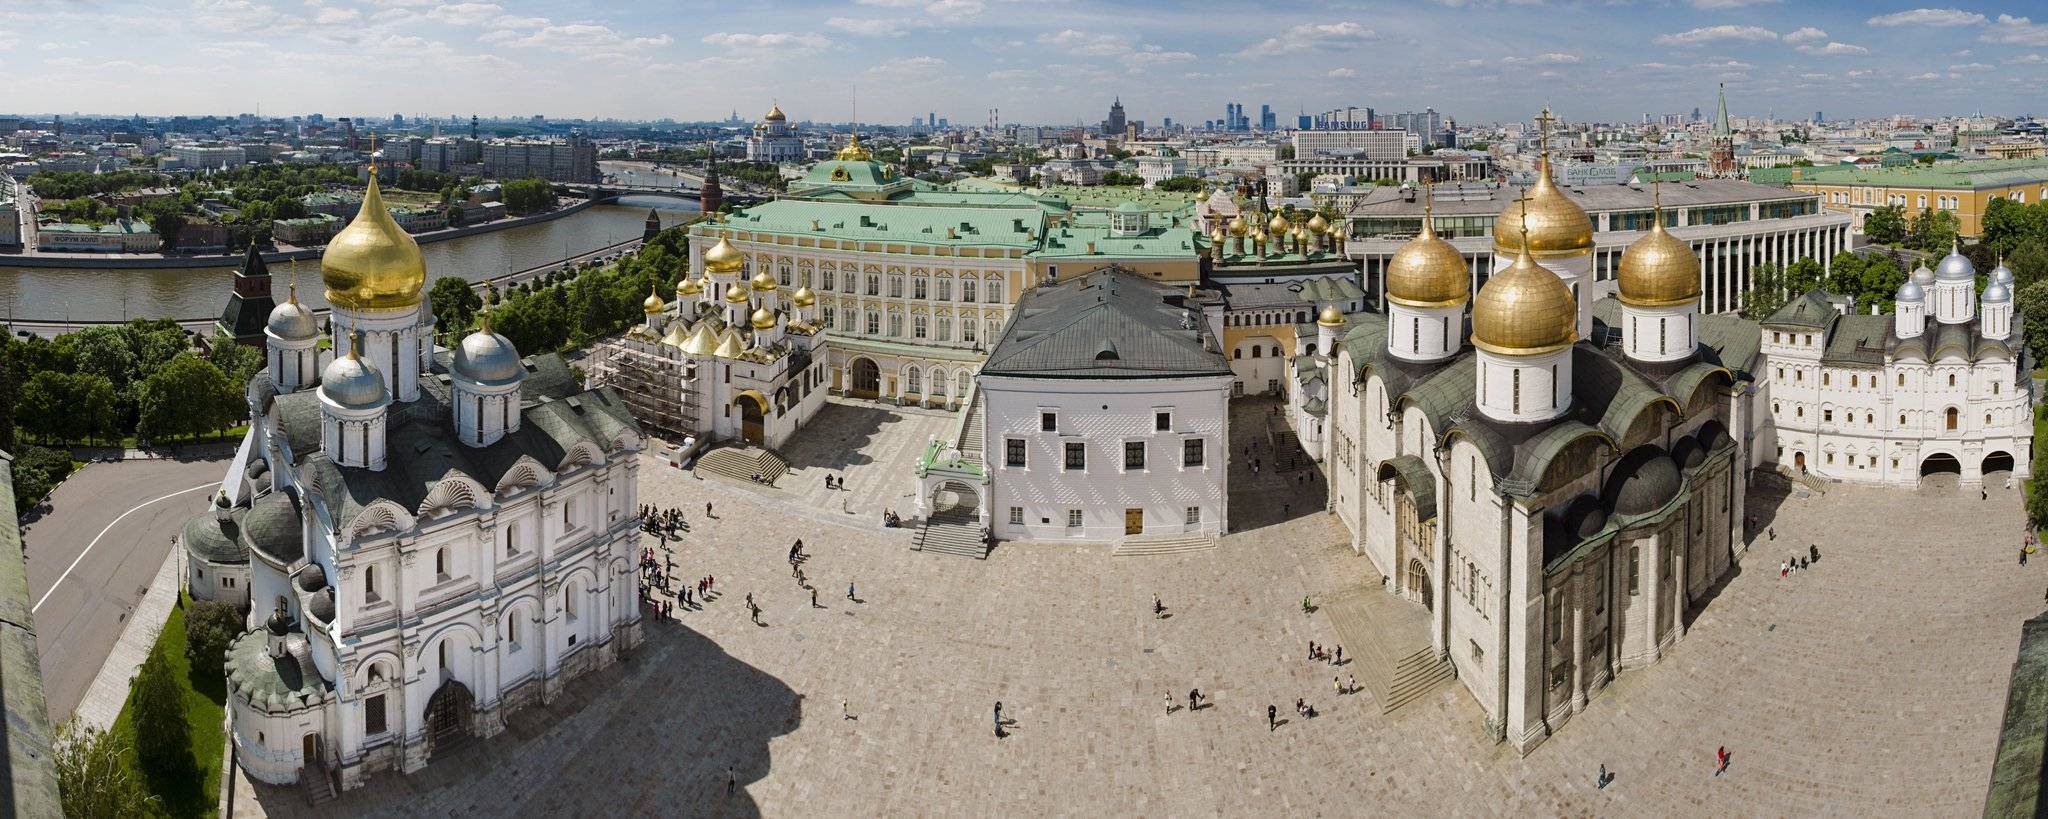 Соборная площадь московского кремля — высшая точка кремлевского холма